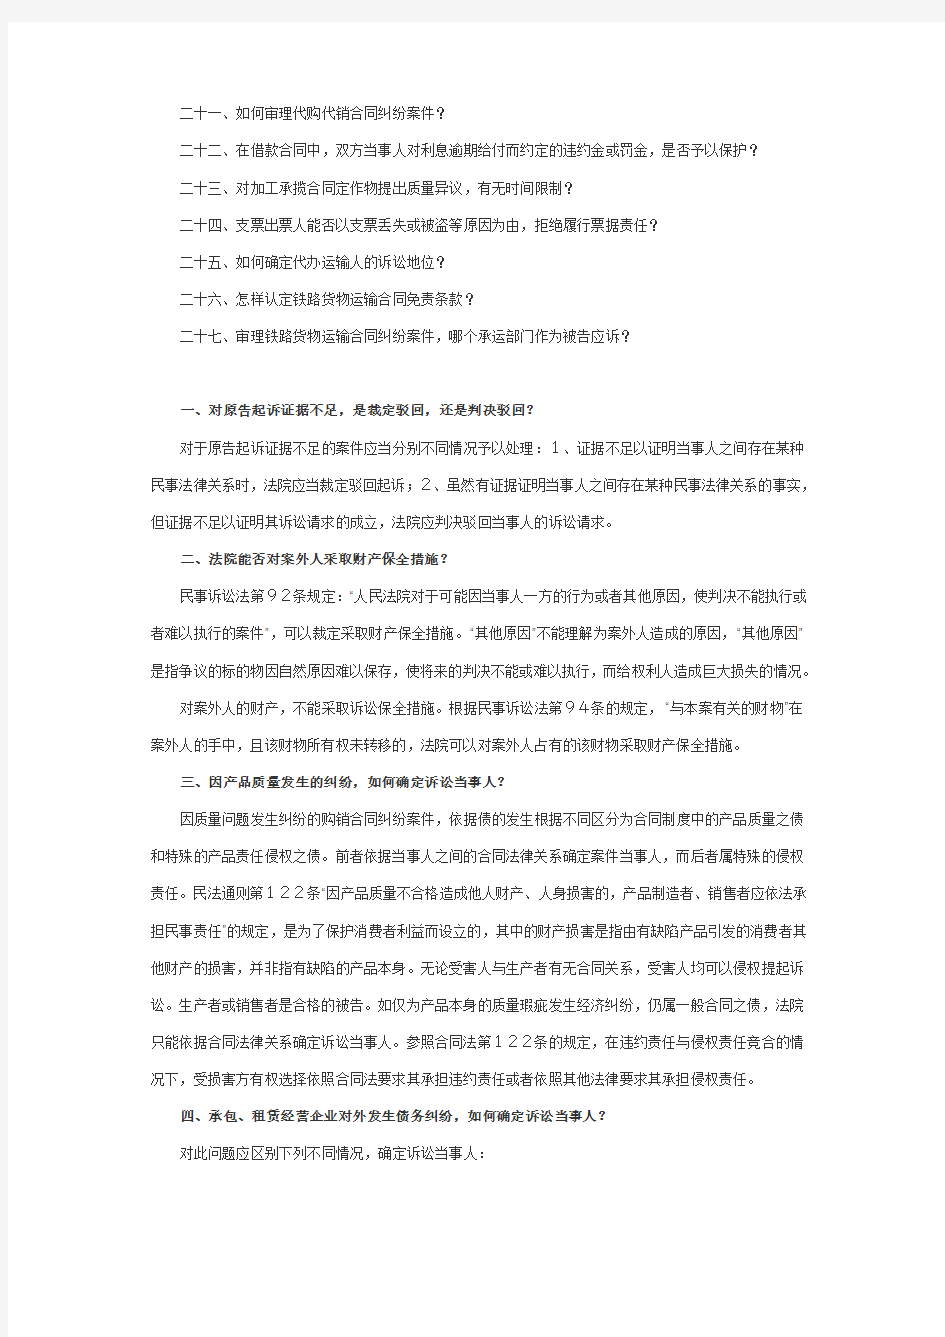 (完整)北京市高级人民法院审理民商事案件若干问题的解答